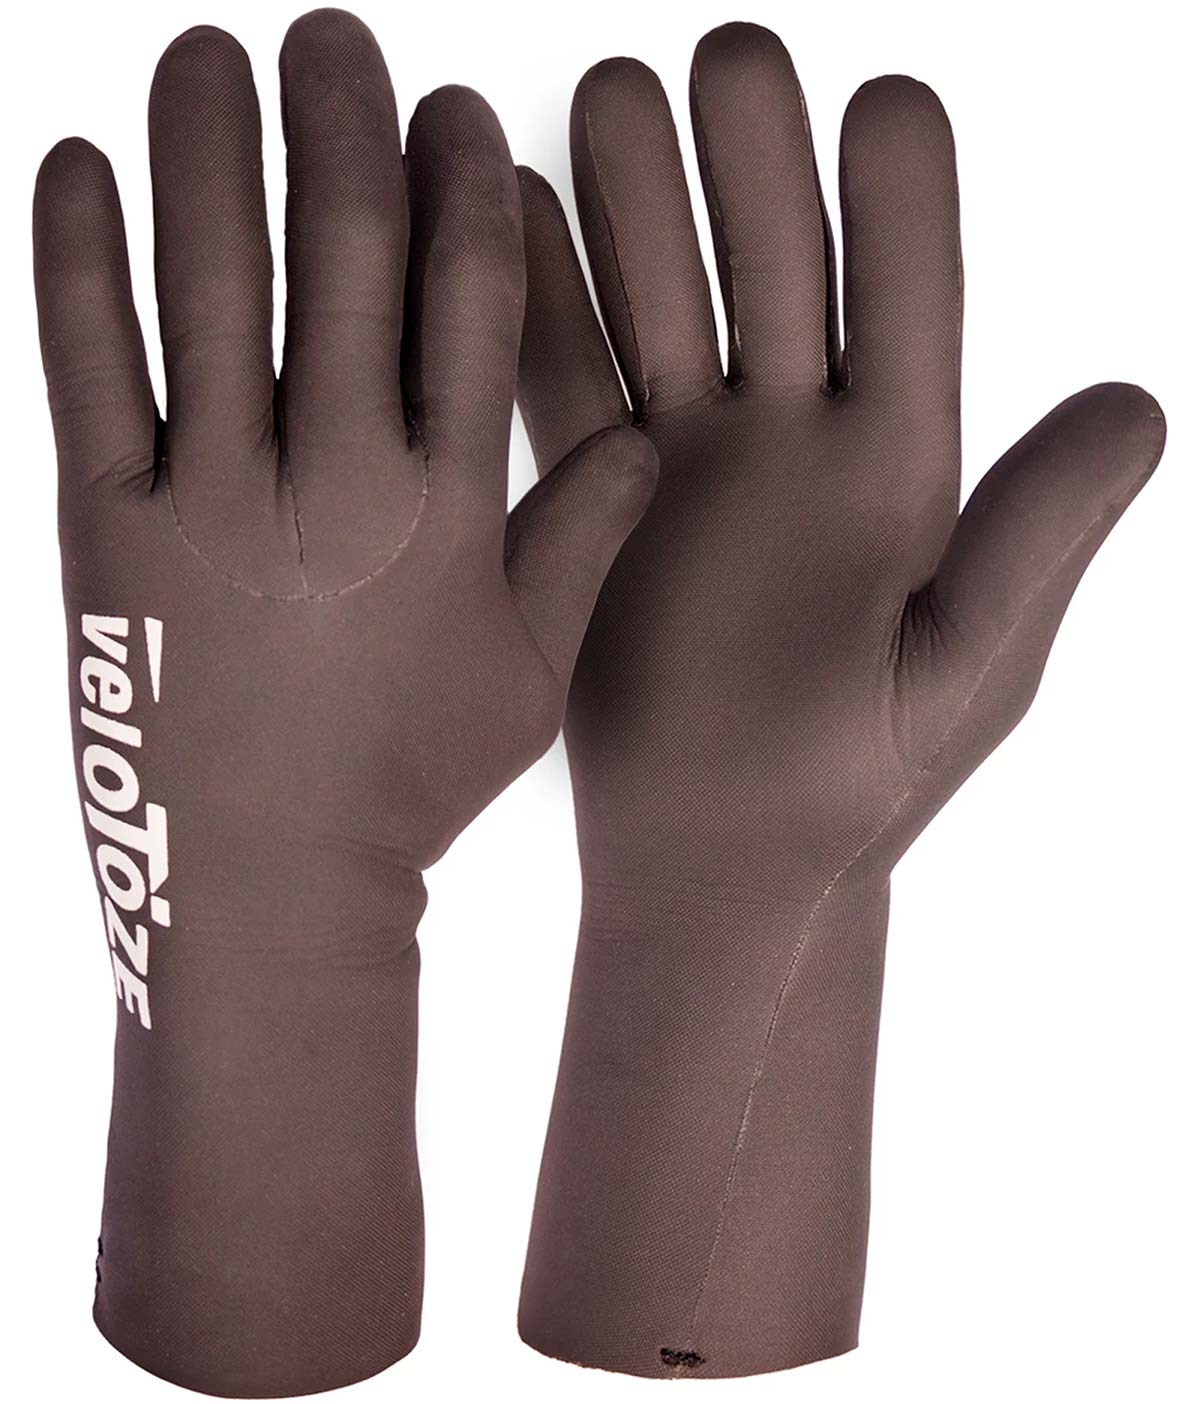 En TodoMountainBike: VeloToze añade más tallas para sus guantes de ciclismo fabricados en neopreno y 100% impermeables